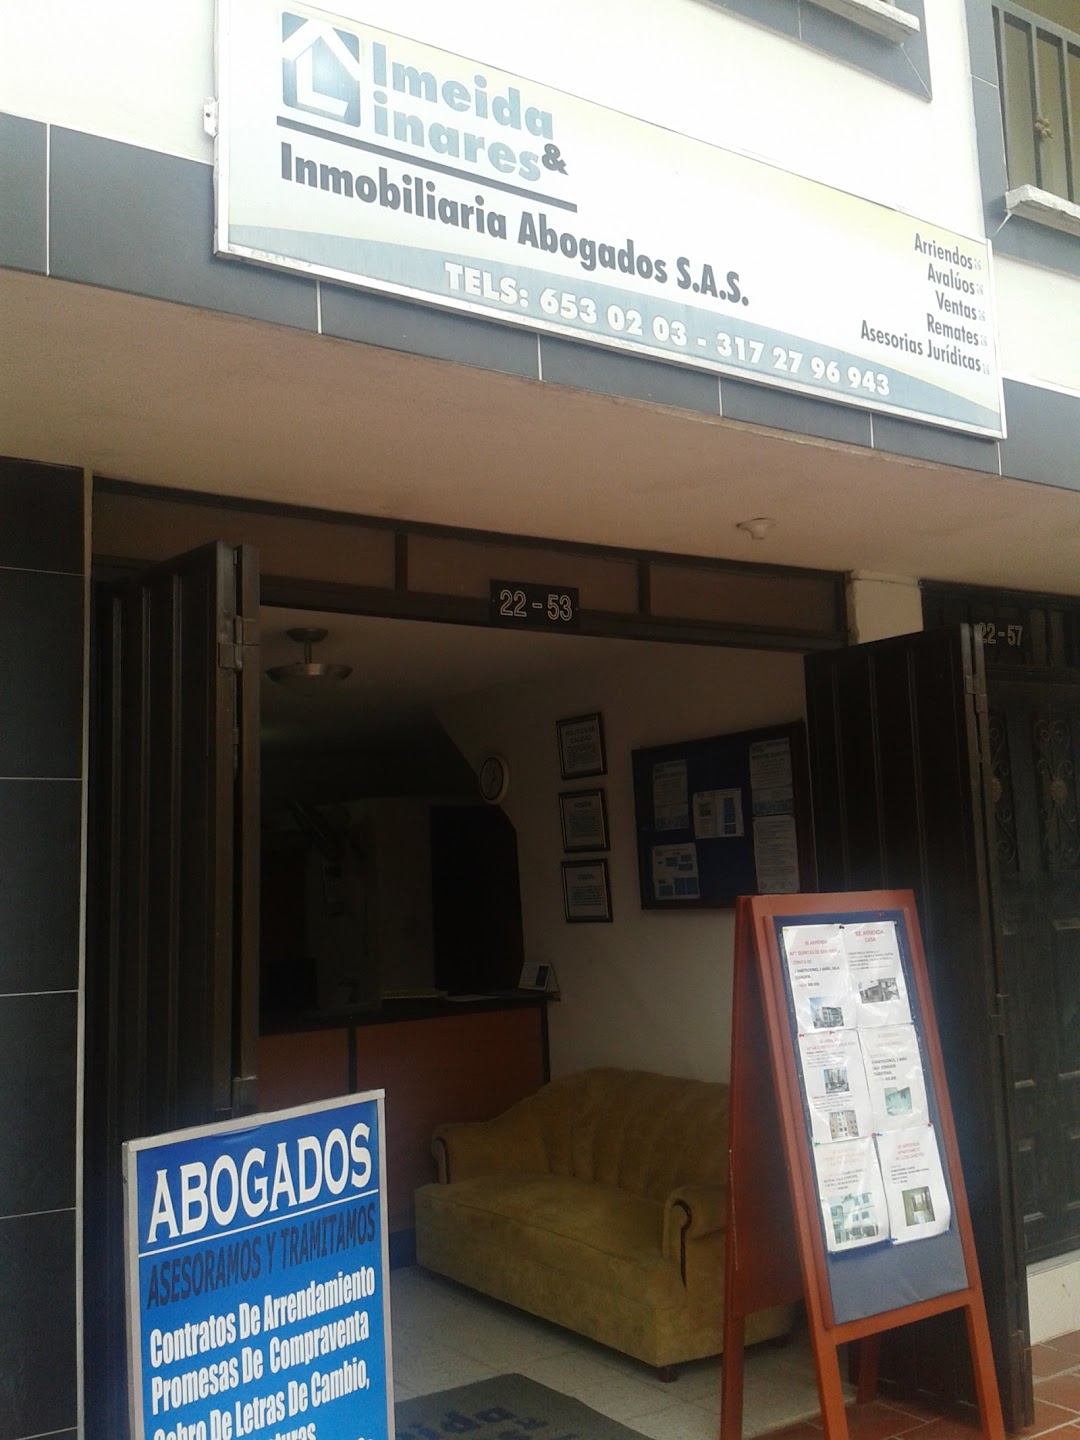 Almeida & Linares Inmobiliaria Abogados S.A.S